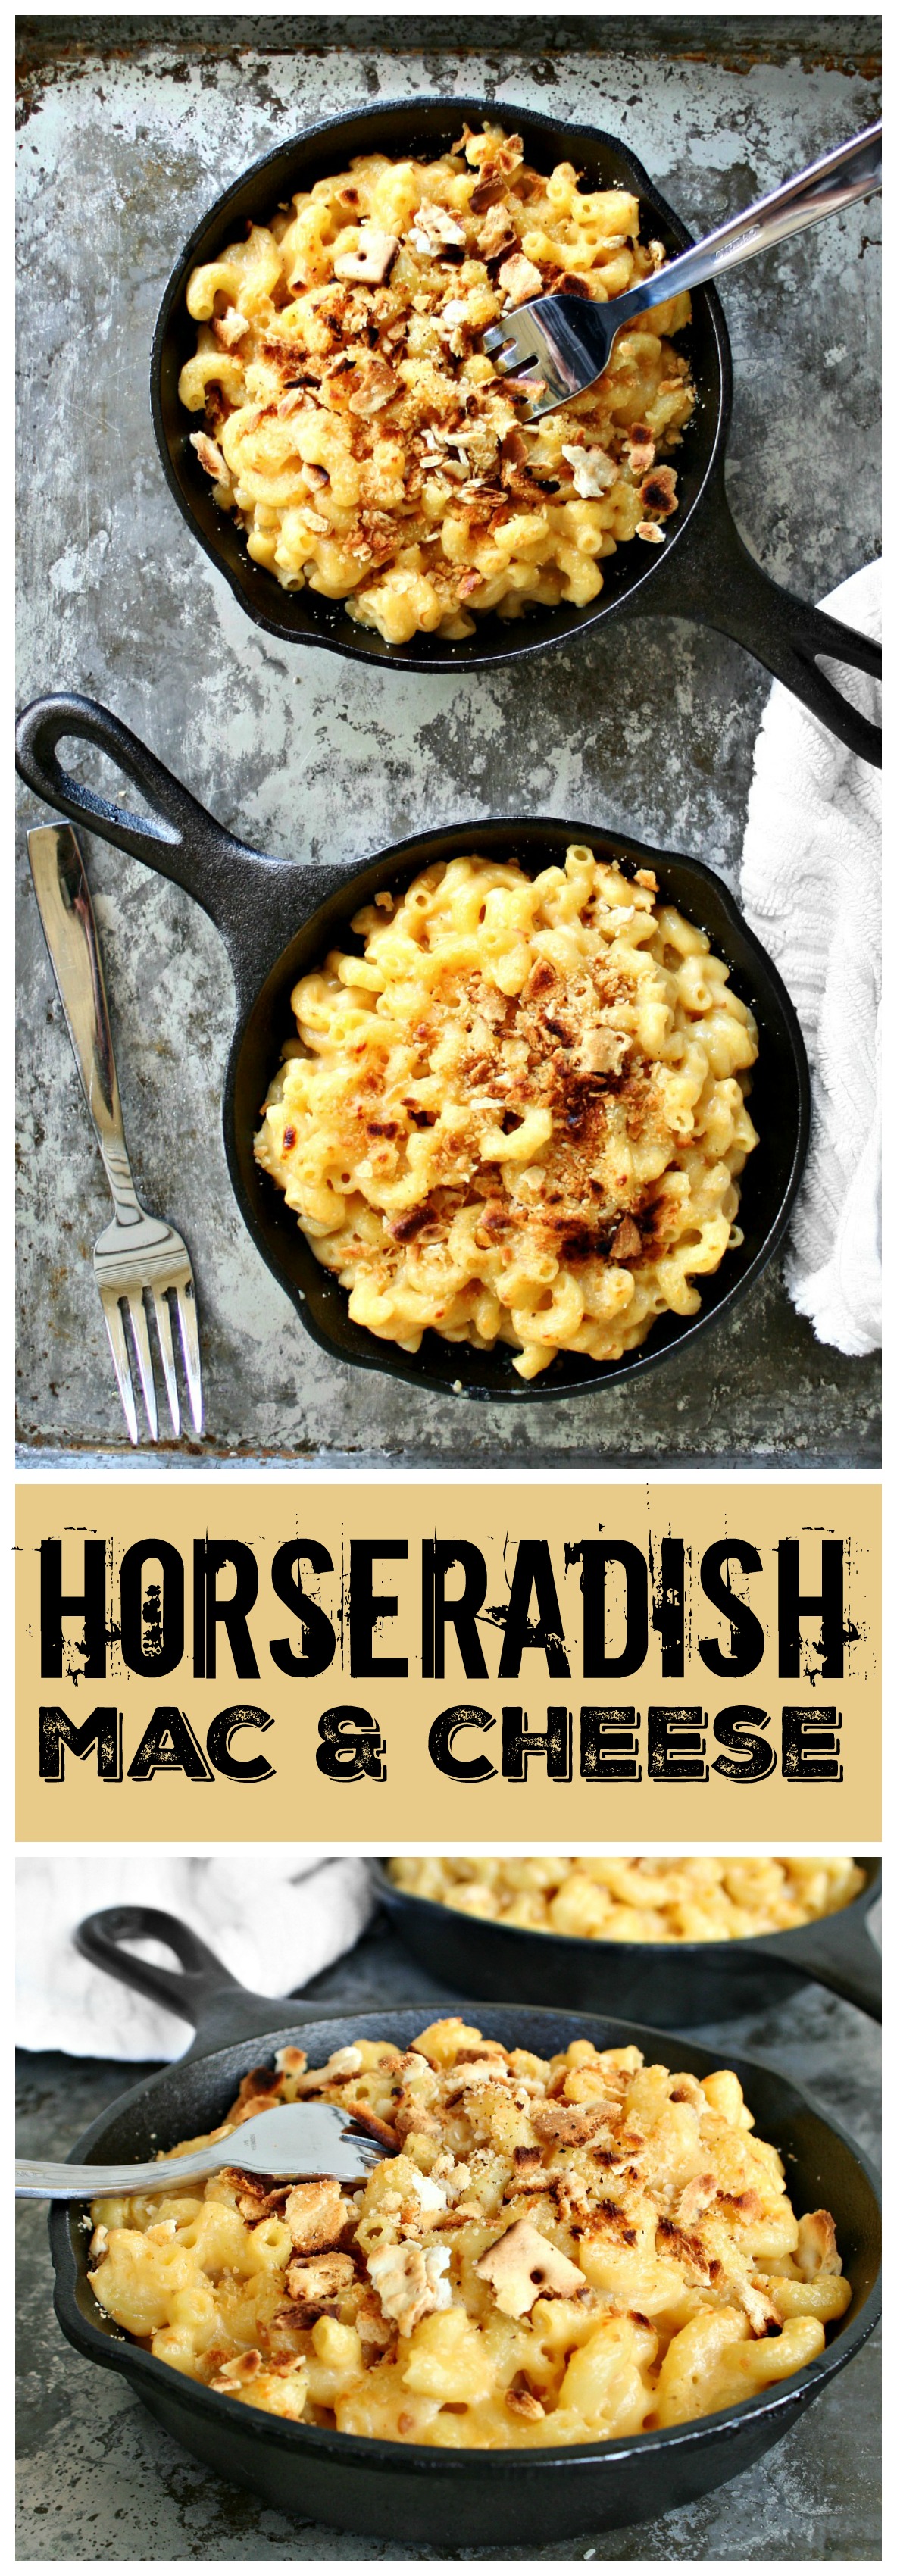 Horseradish Mac and Cheese!